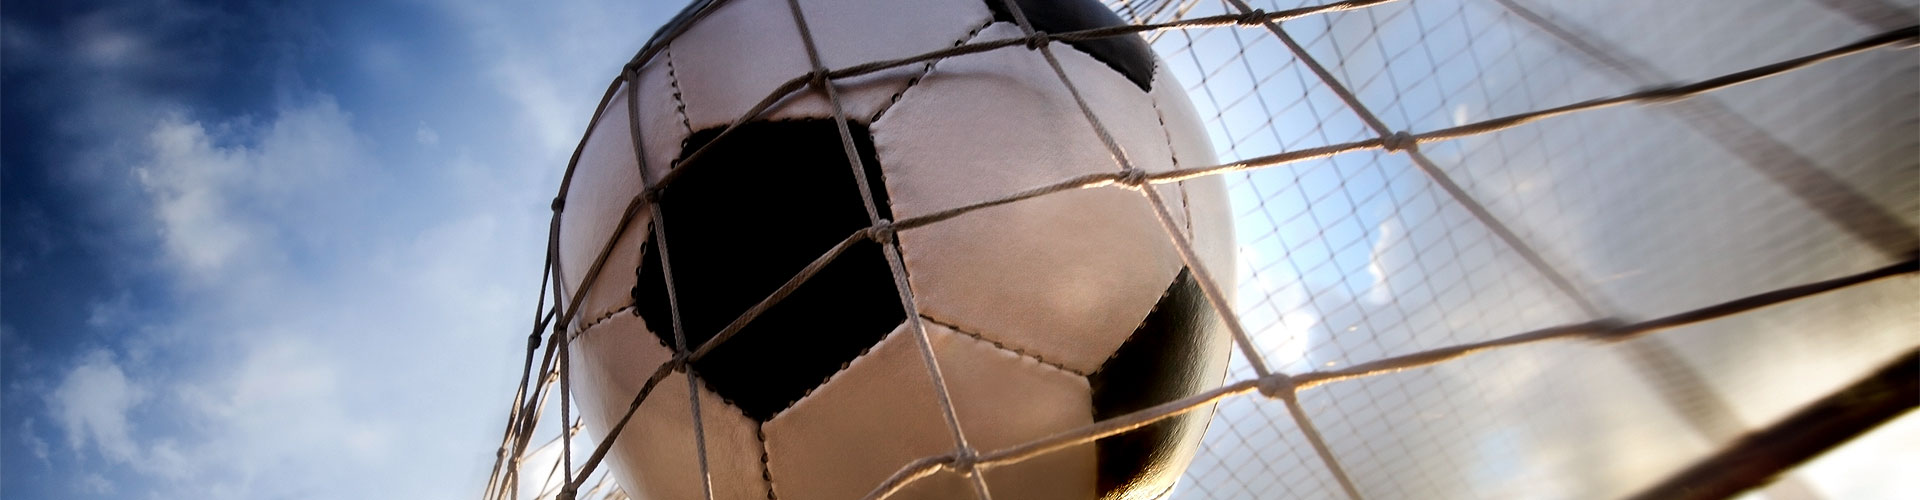 Ver la Eurocopa 2020 de fútbol en vivo en Castillo de Villamalefa